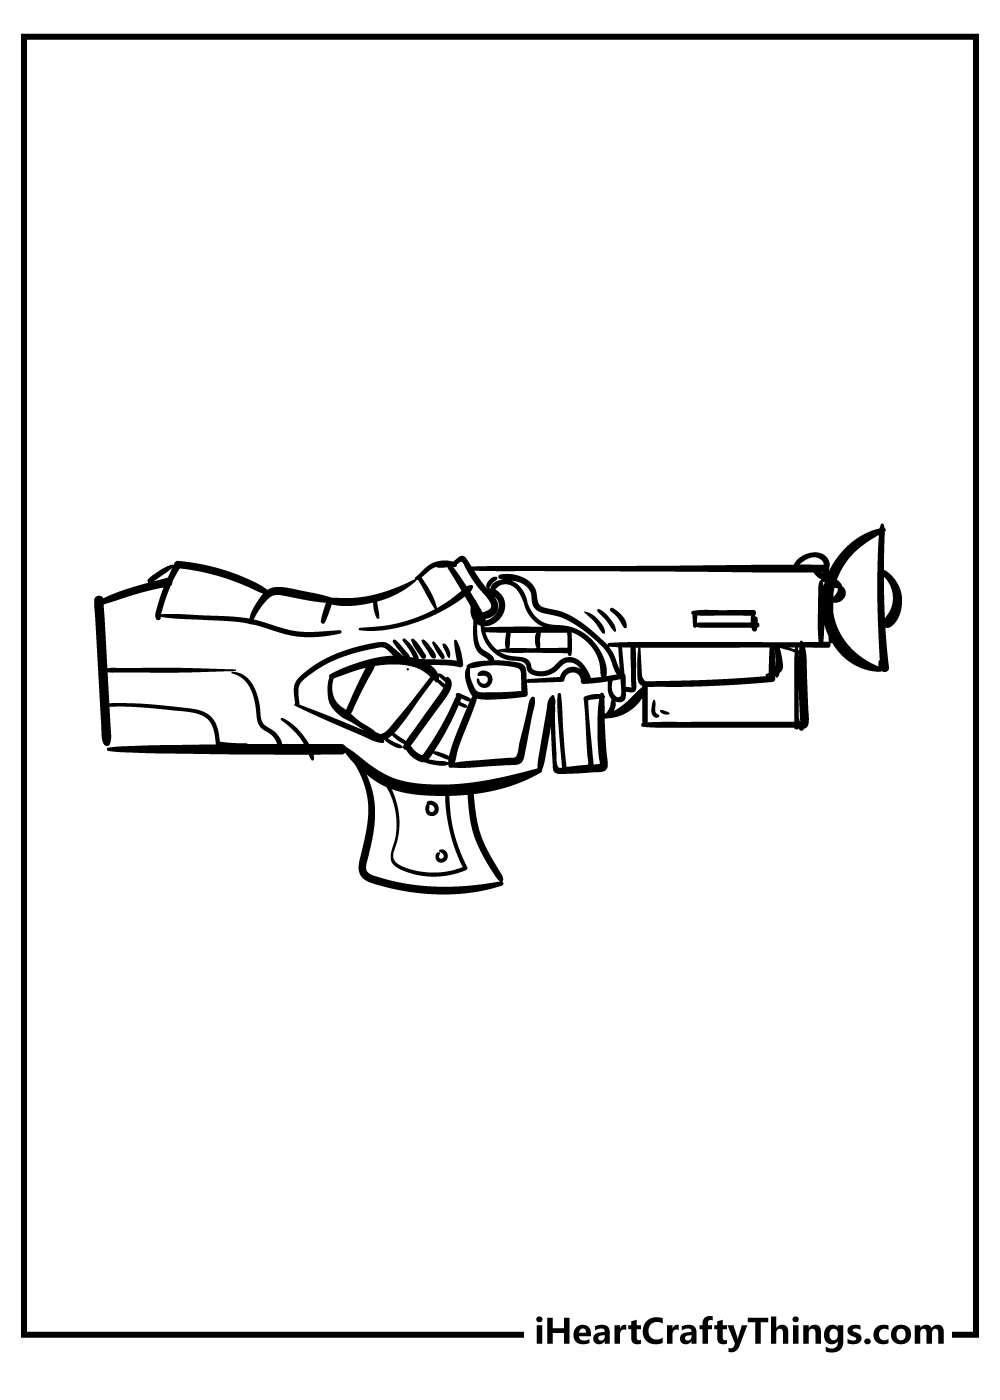 Nerf Gun Coloring Pages free pdf download